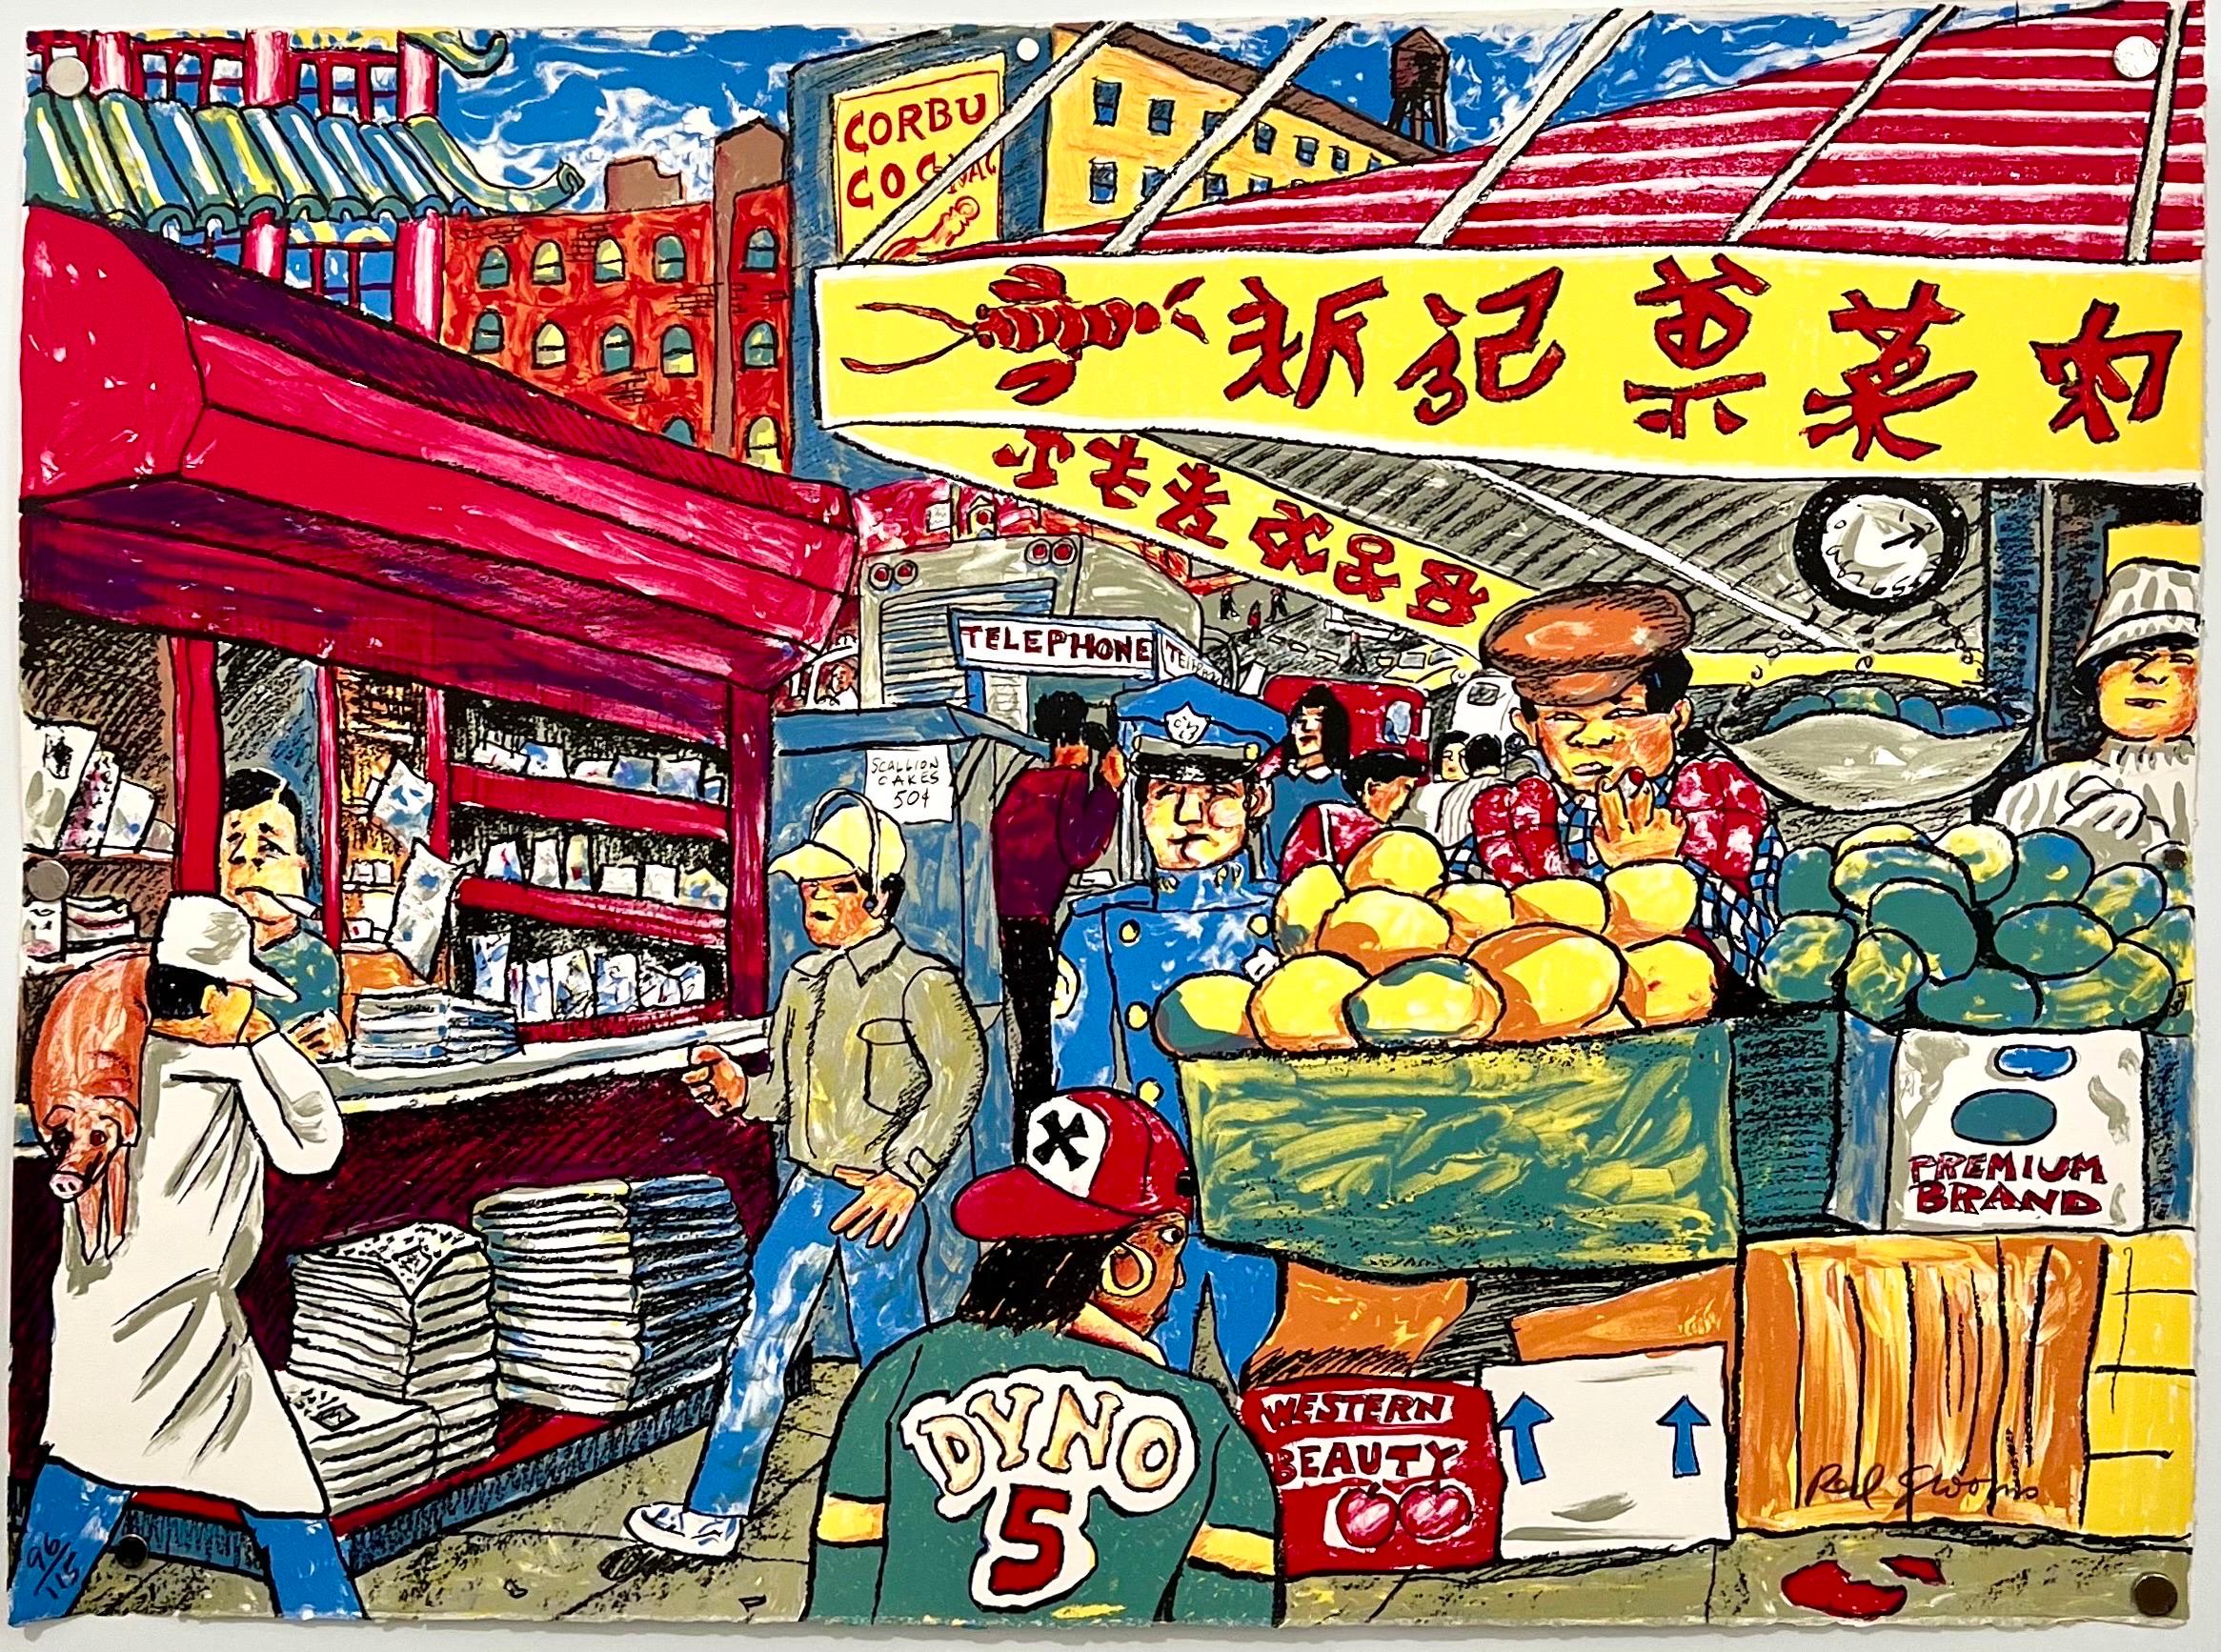 Red Grooms (américain, né en 1937). 
Lithographie en couleurs sur papier vélin, 1993
"À l'est de la rue Canal, à l'angle de la rue Canal.
Publié par le Brooklyn Museum 
(Référence :  Les palefreniers rouges : L'œuvre graphique, Walter G. Knestrick.